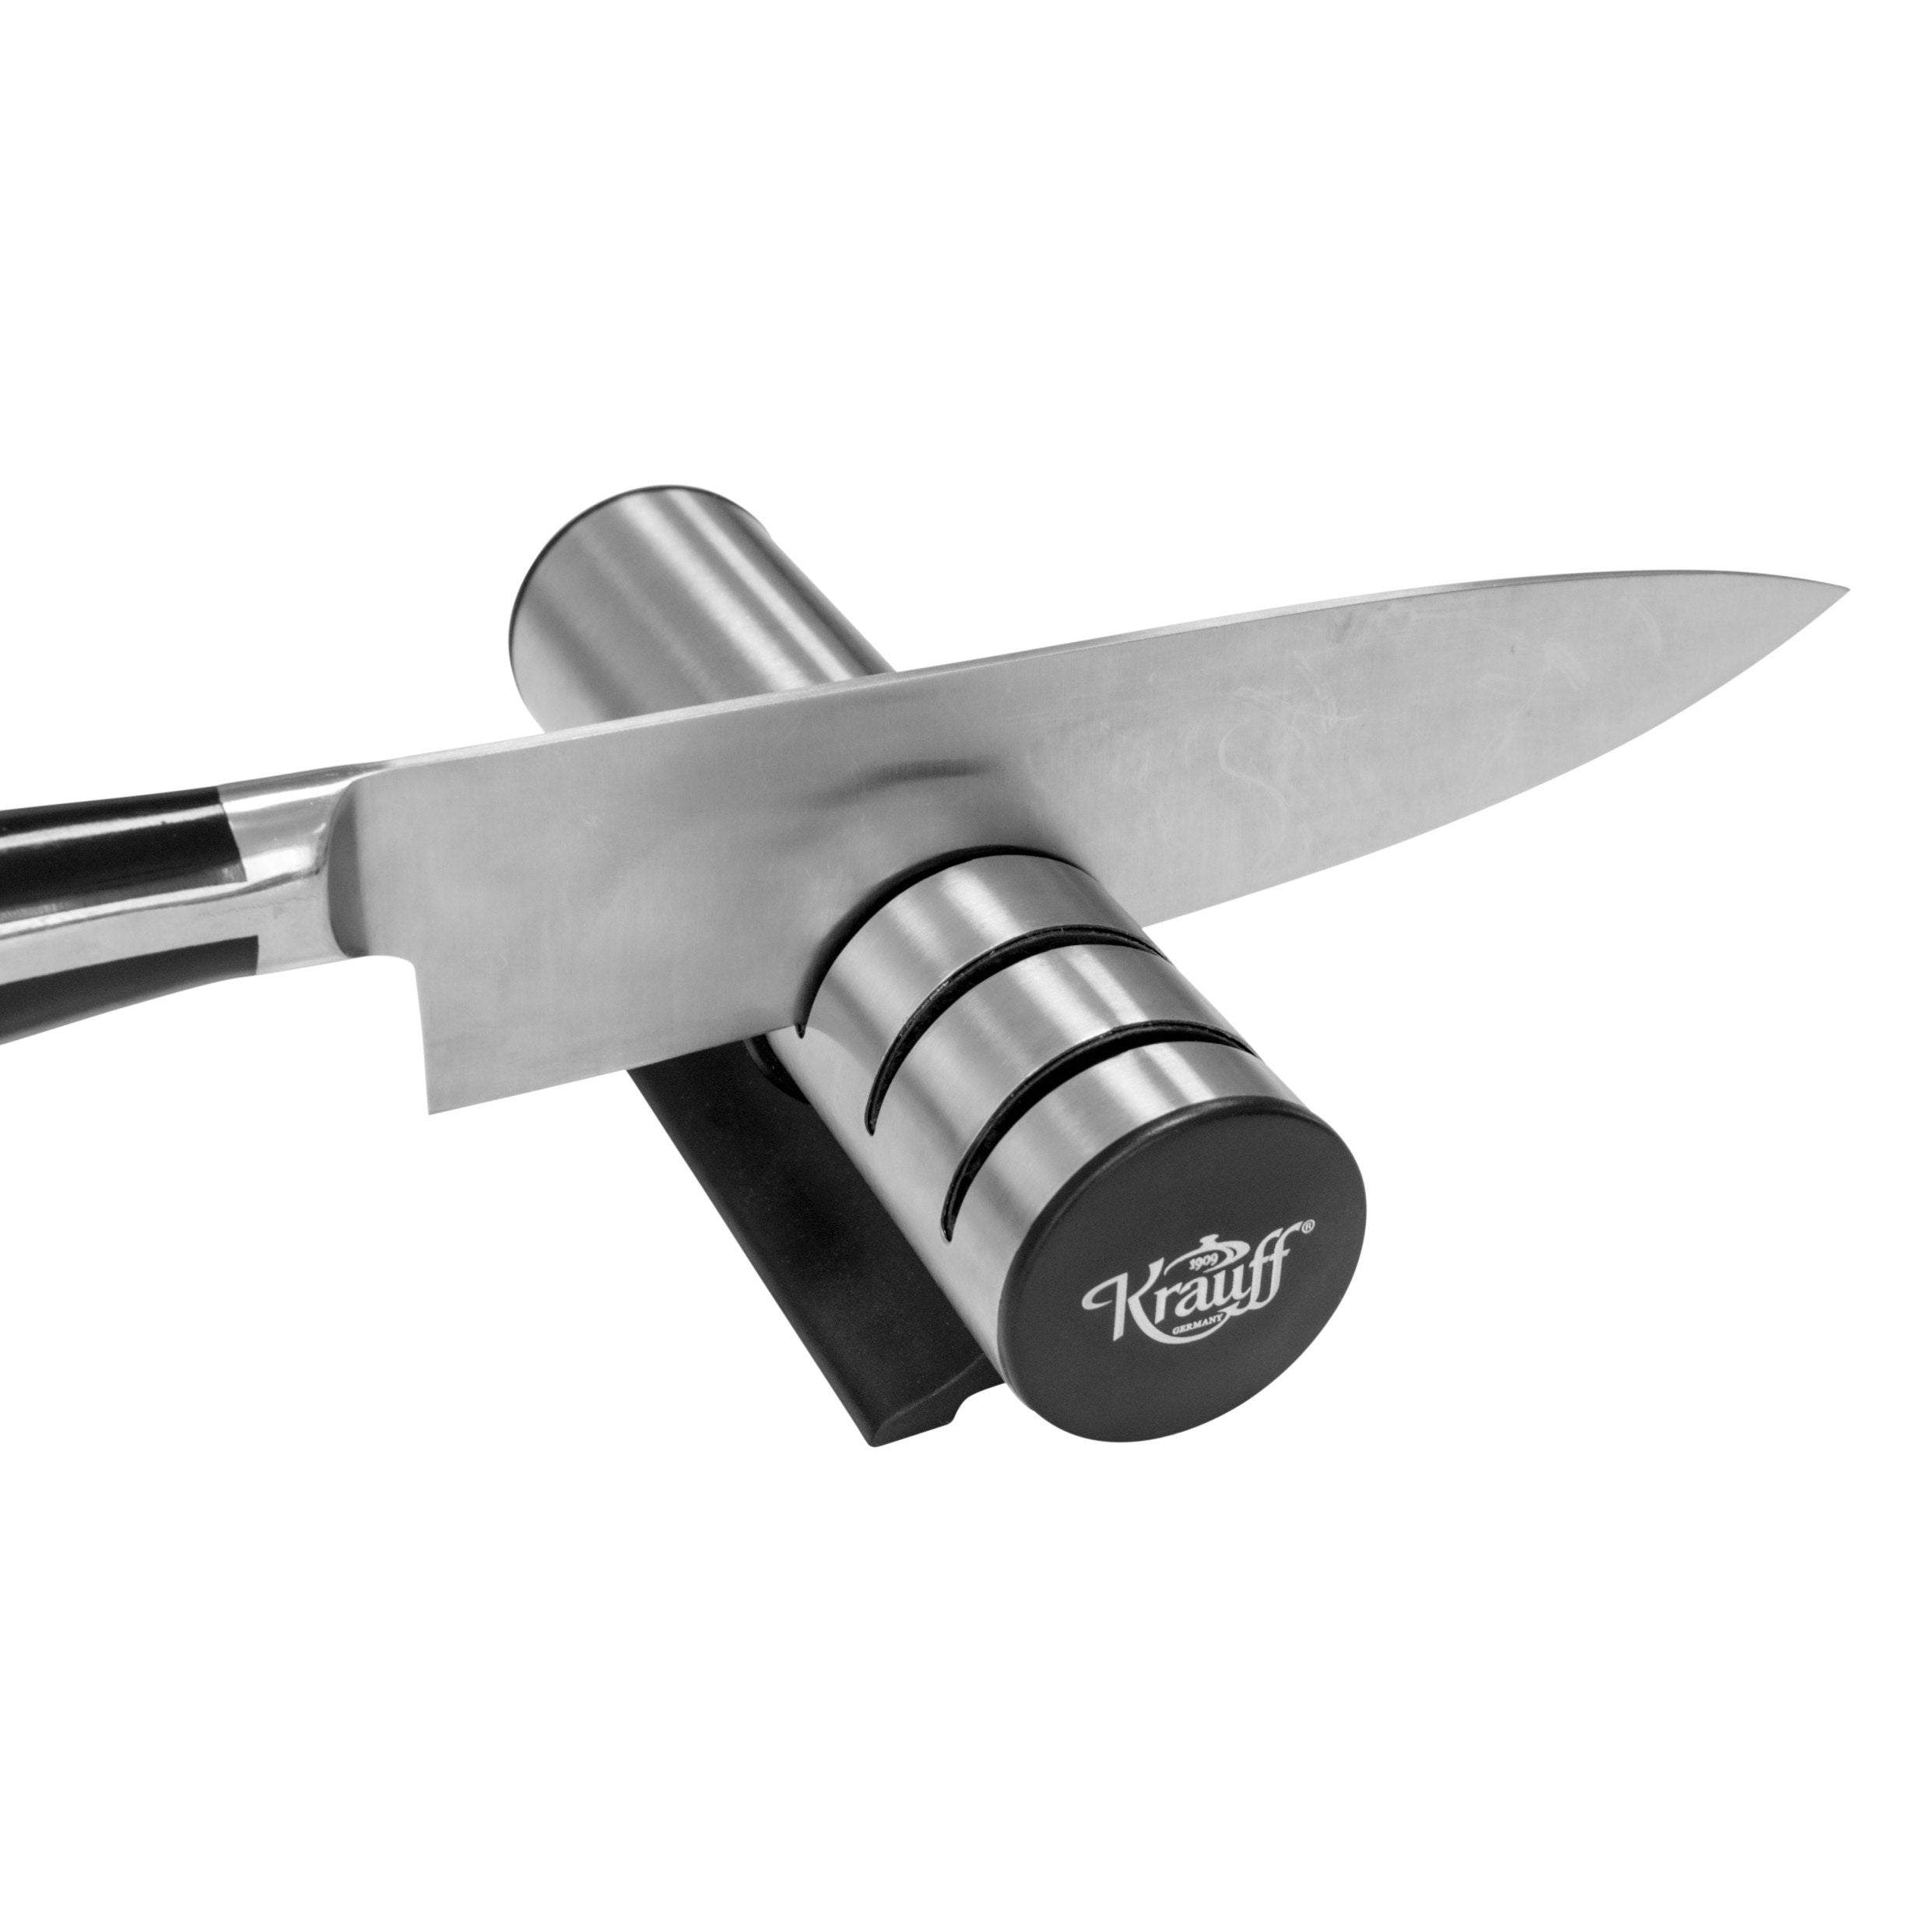 Wetzen knife sharpener